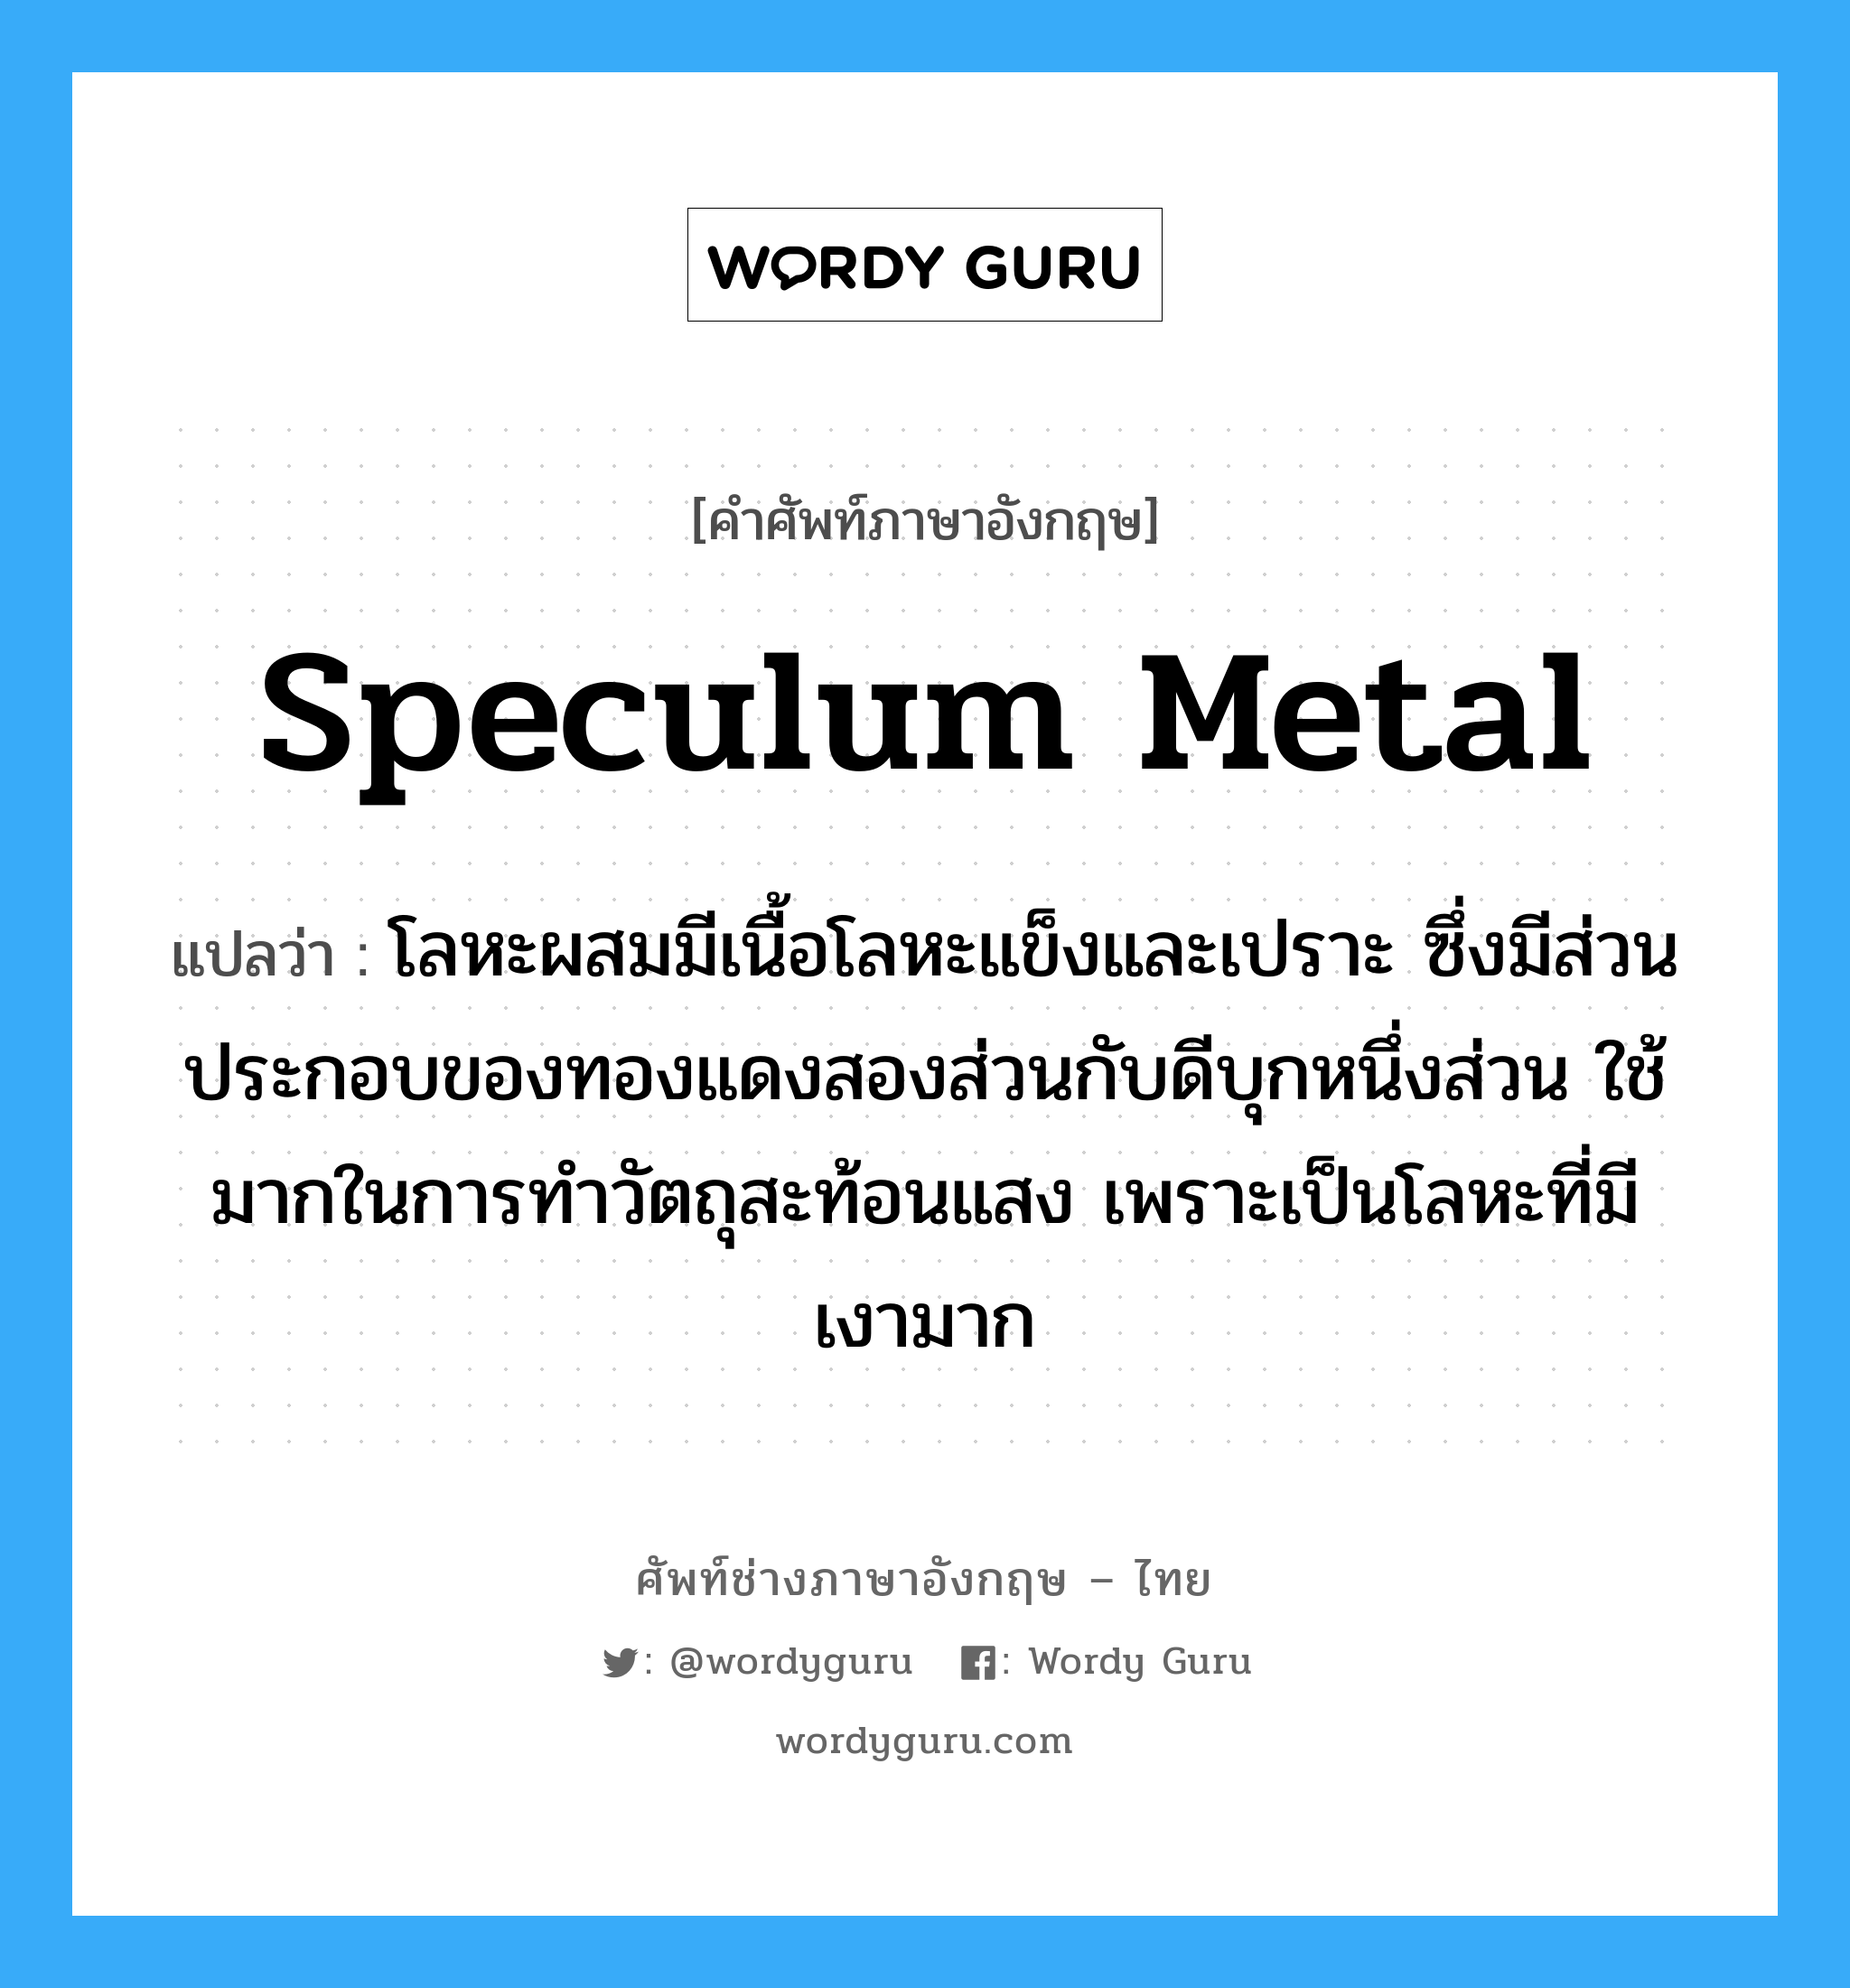 speculum metal แปลว่า?, คำศัพท์ช่างภาษาอังกฤษ - ไทย speculum metal คำศัพท์ภาษาอังกฤษ speculum metal แปลว่า โลหะผสมมีเนื้อโลหะแข็งและเปราะ ซึ่งมีส่วนประกอบของทองแดงสองส่วนกับดีบุกหนึ่งส่วน ใช้มากในการทำวัตถุสะท้อนแสง เพราะเป็นโลหะที่มีเงามาก